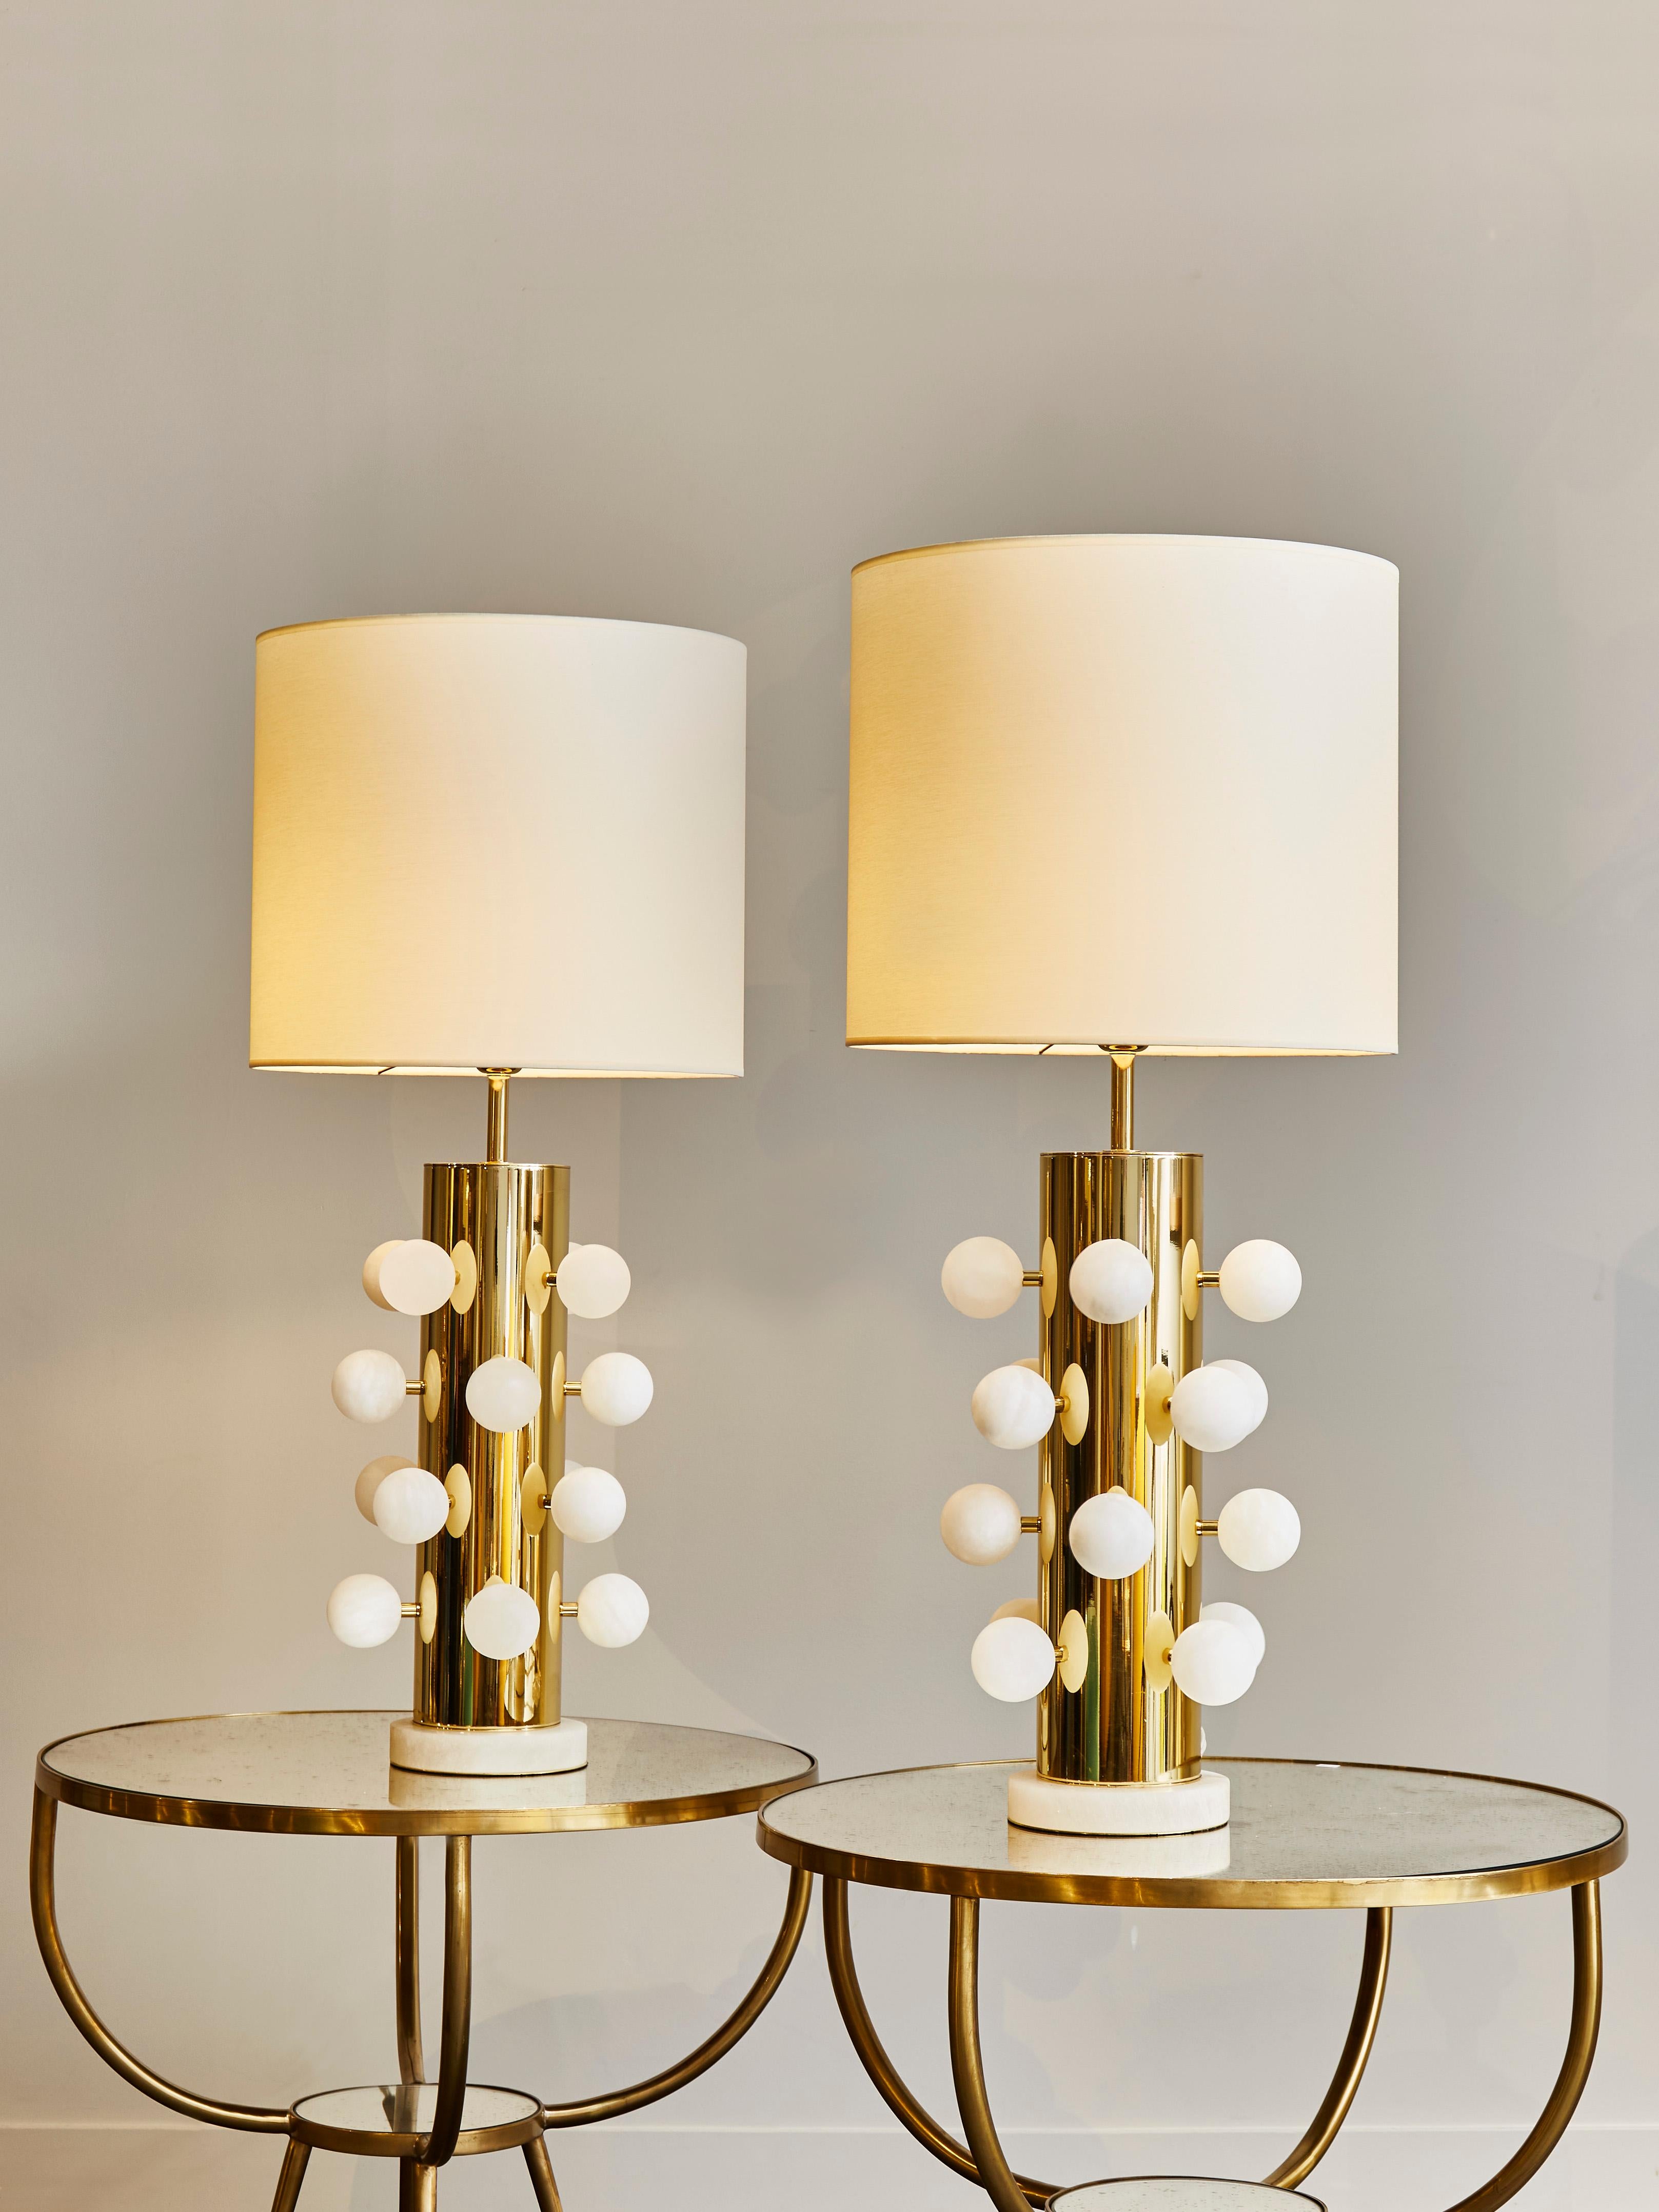 Paar Tischlampen aus poliertem Messing, mit Alabasterfüßen und dekorativen Kugeln, die über die ganze Lampe verteilt sind.
    